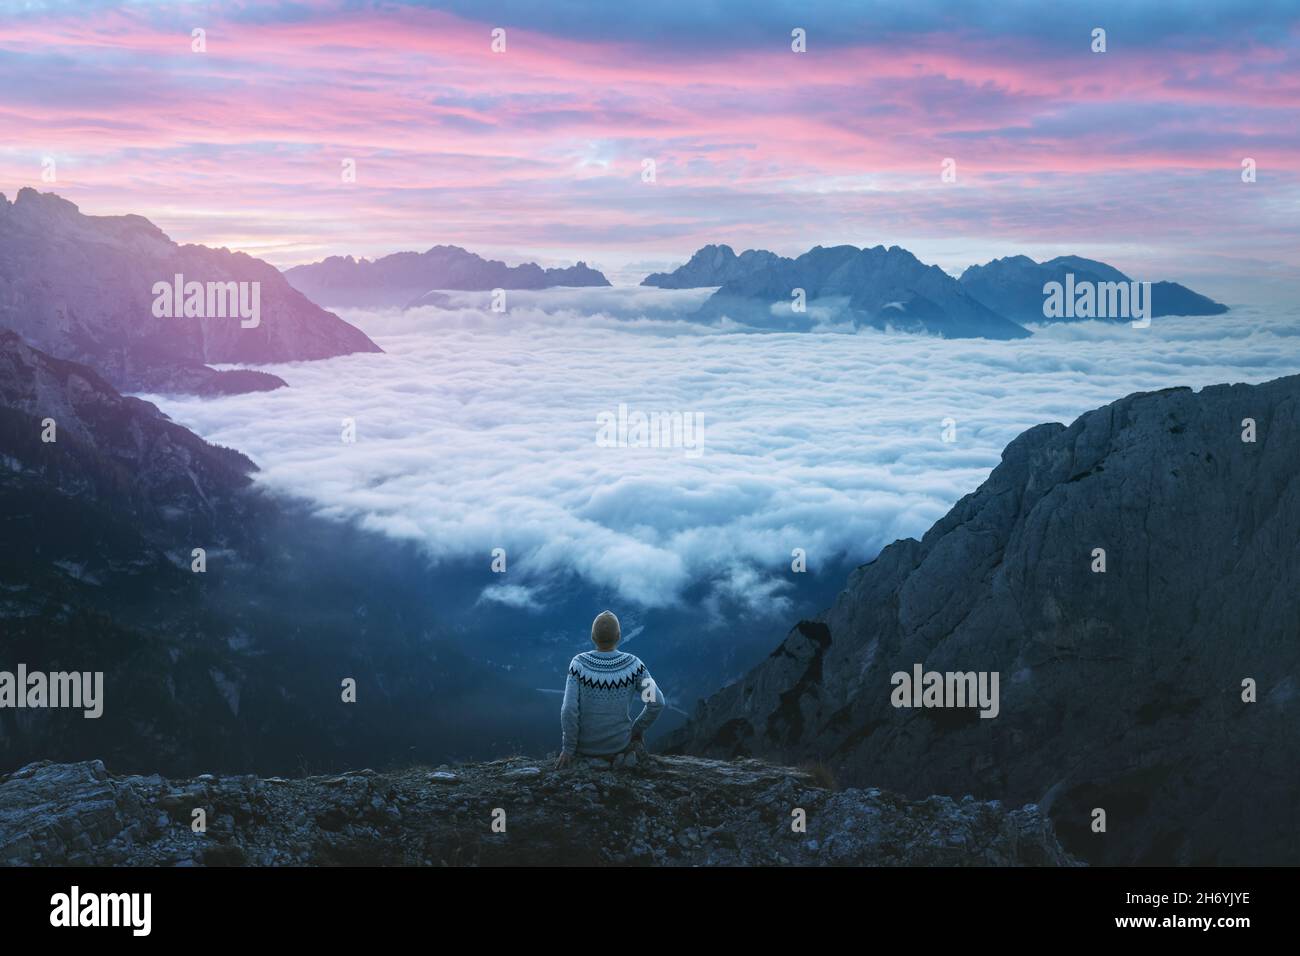 Ein Tourist, der über dem Nebel am Rand einer Klippe in den Dolomiten sitzt. Lage Auronzo rifugio im Nationalpark Tre Cime di Lavaredo, Dolomiten, Trentino-Südtirol, Italien Stockfoto